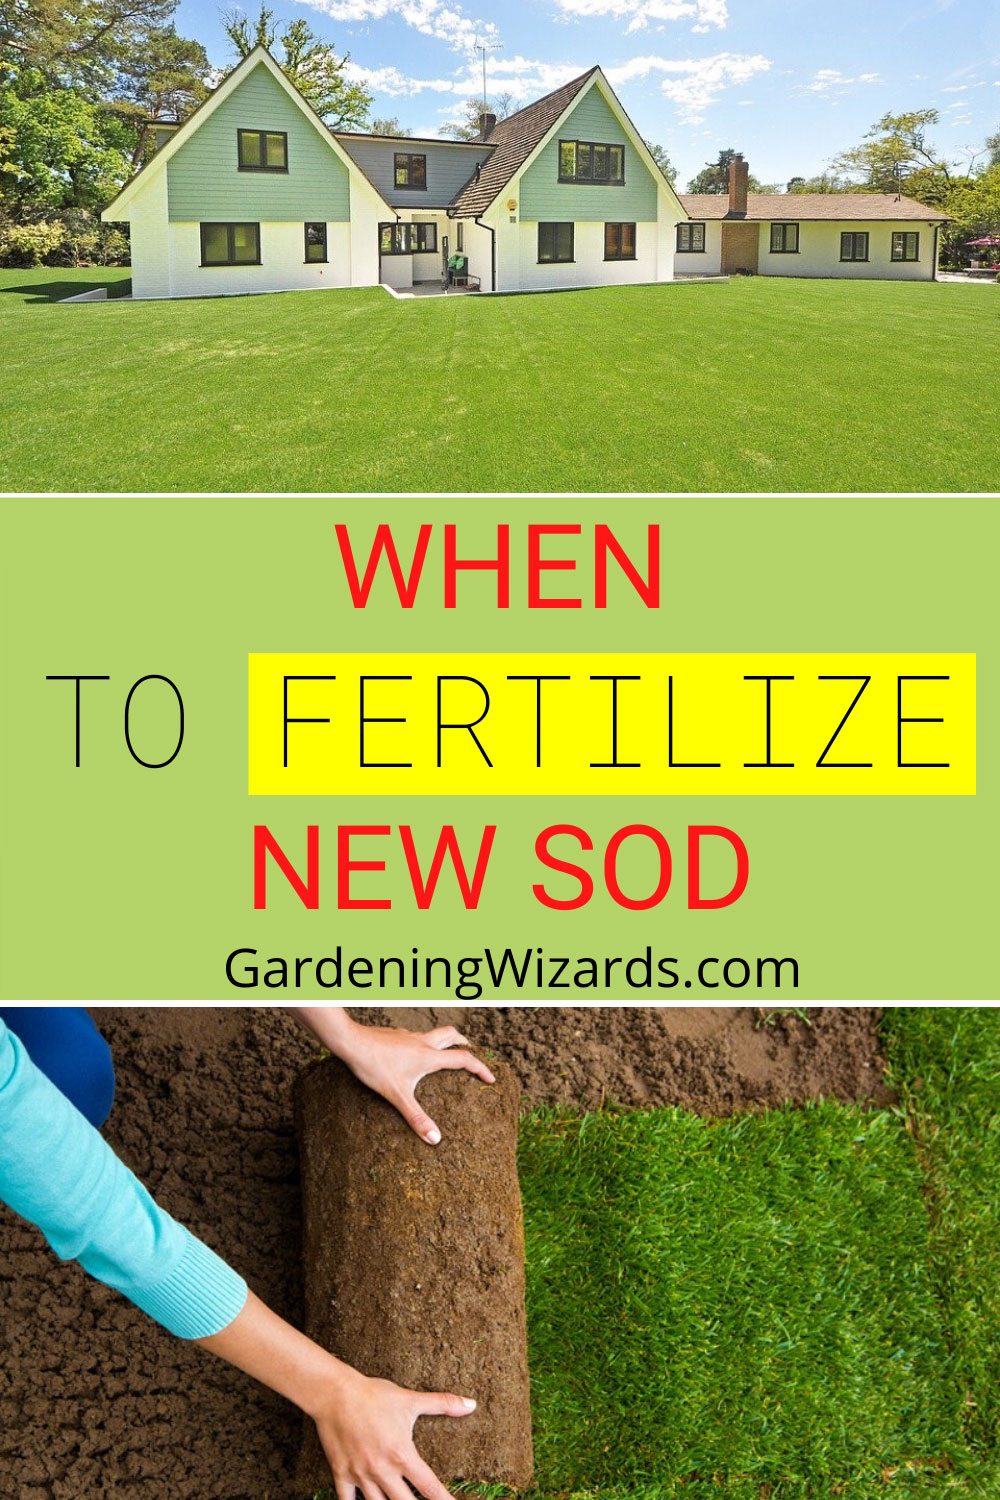 When to Fertilize New Sod